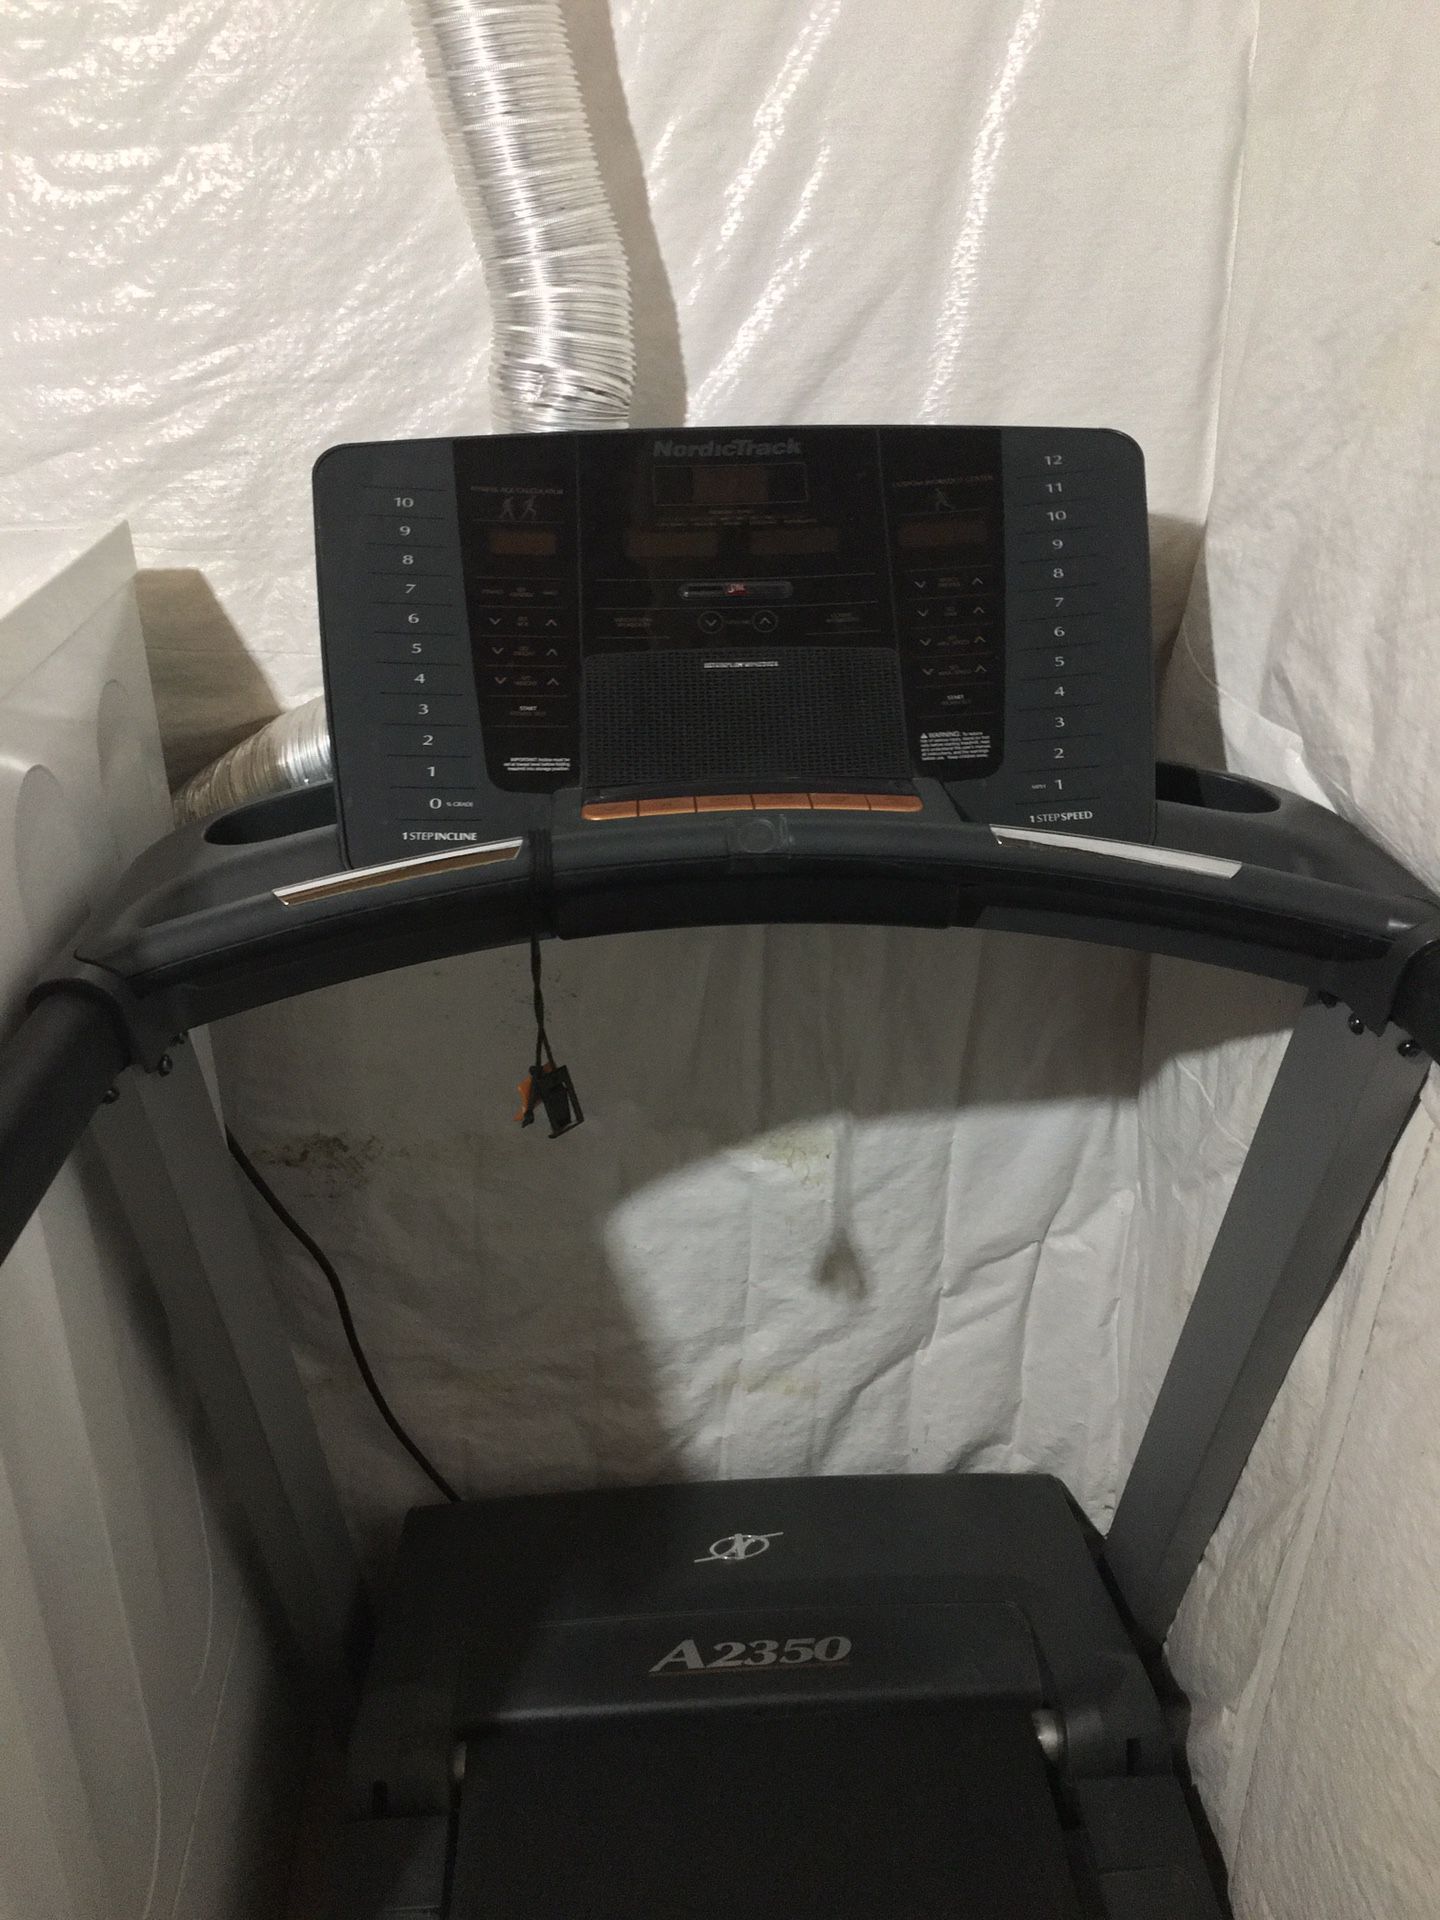 NordicTrack iFit Treadmill A2350